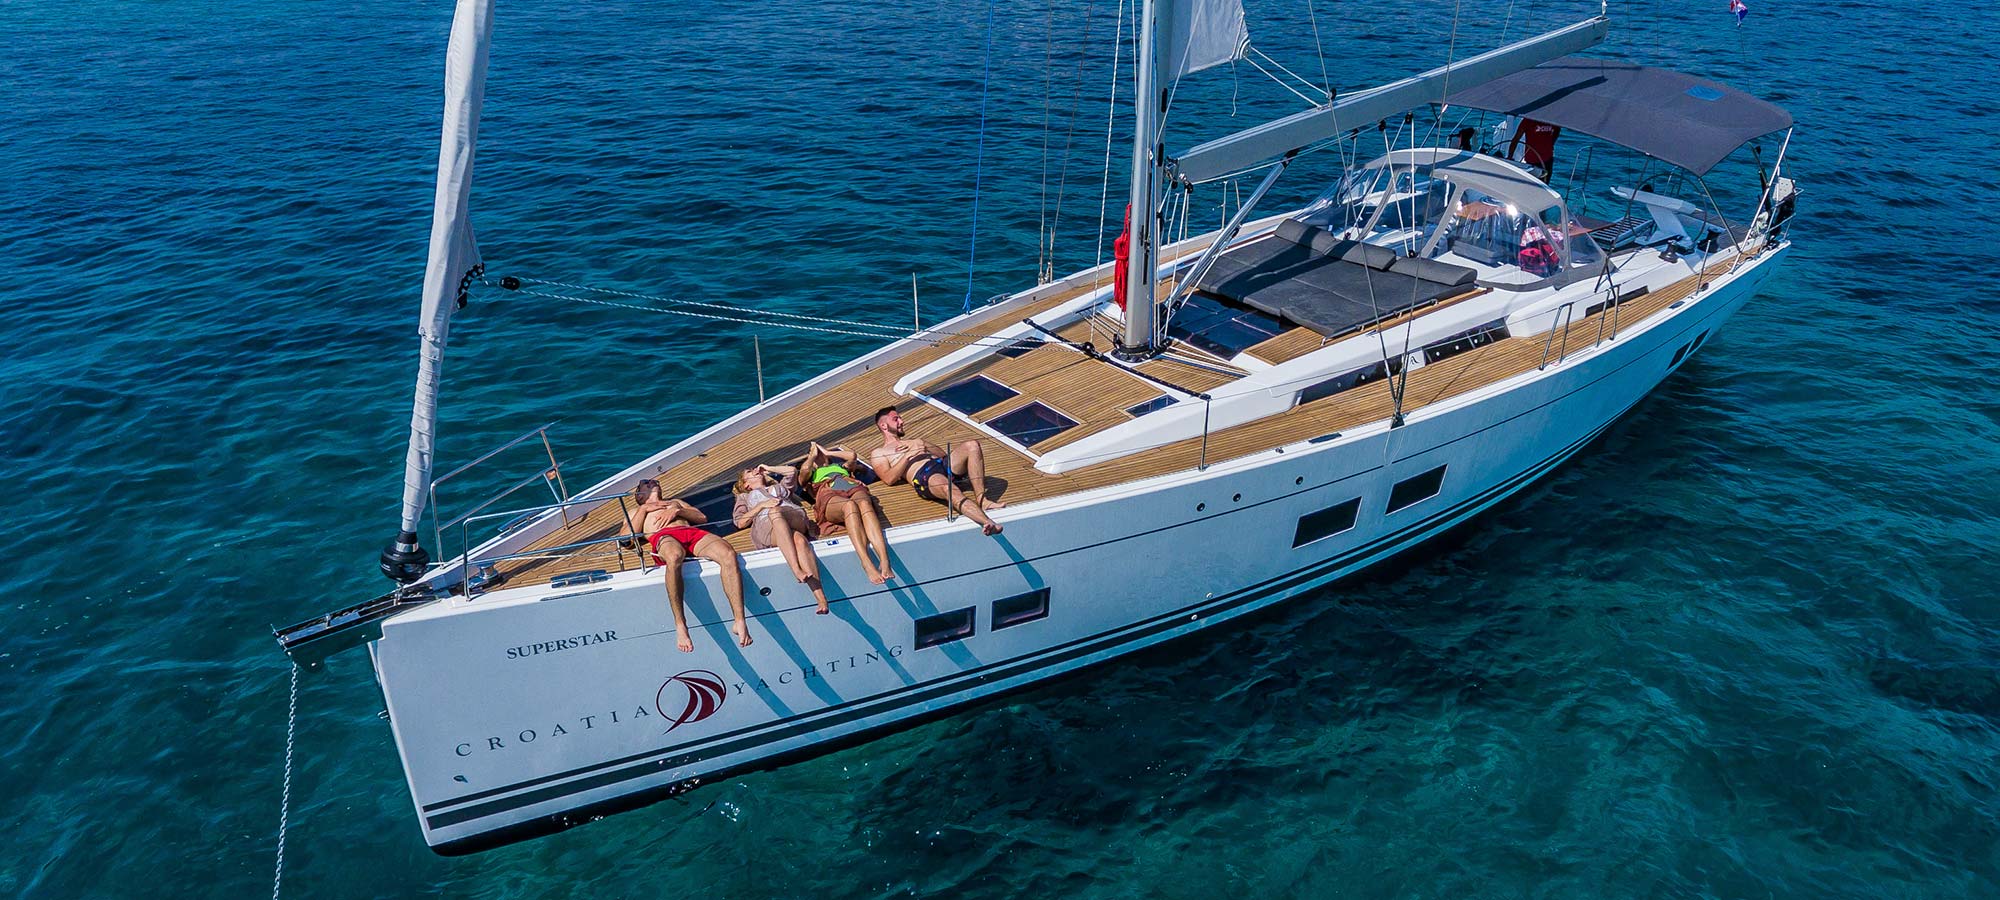 Croatia Yacht Charter Price Guide 2023 | Croatia Yachting Charter